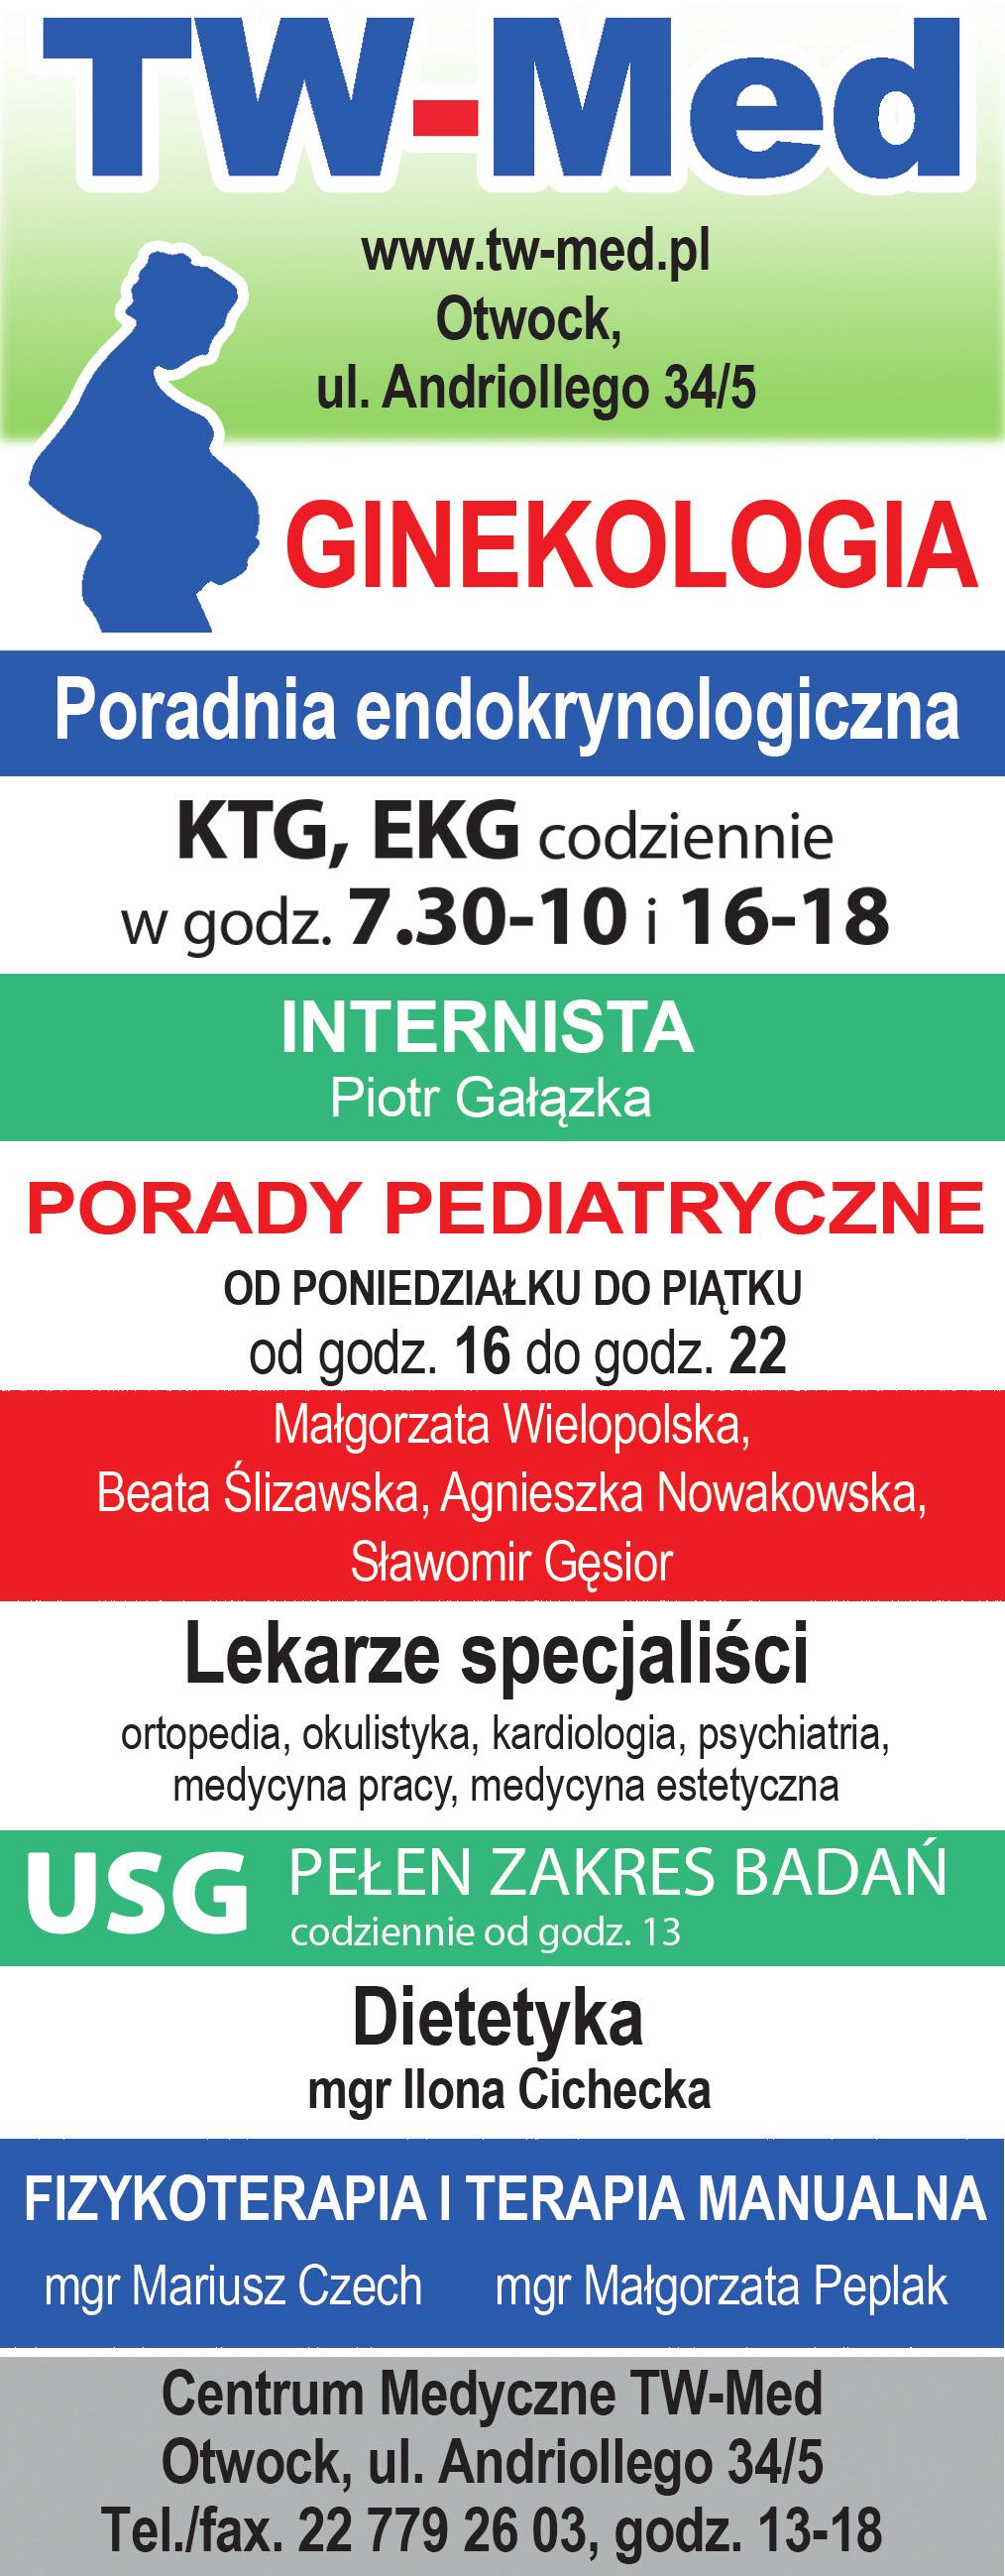 ogłoszenia drobne 27 linia otwocka 21-27 sierpnia 2017 GaBineT okulistyczny SPECJALISTYCZNE CENTRUM REHABILITACJI www.specer.pl lek. małgorzata gruchoła specjalista ii st. okulistyki lek.